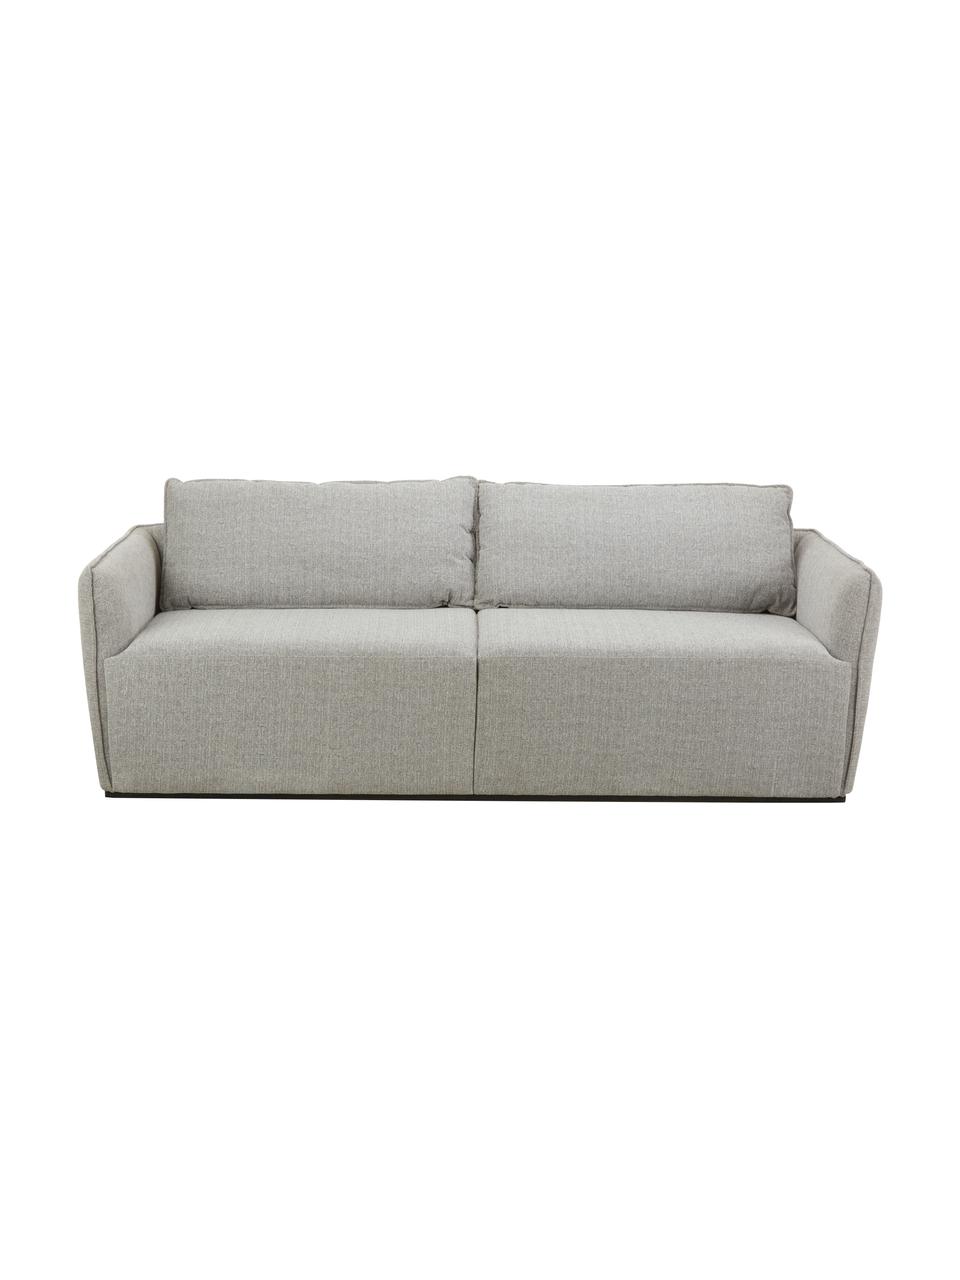 Sofa John (3-Sitzer) in Grau, Bezug: 100% Polyester Der hochwe, Gestell: Massives Eschenholz, Euka, Webstoff Grau, B 210 x L 98 cm